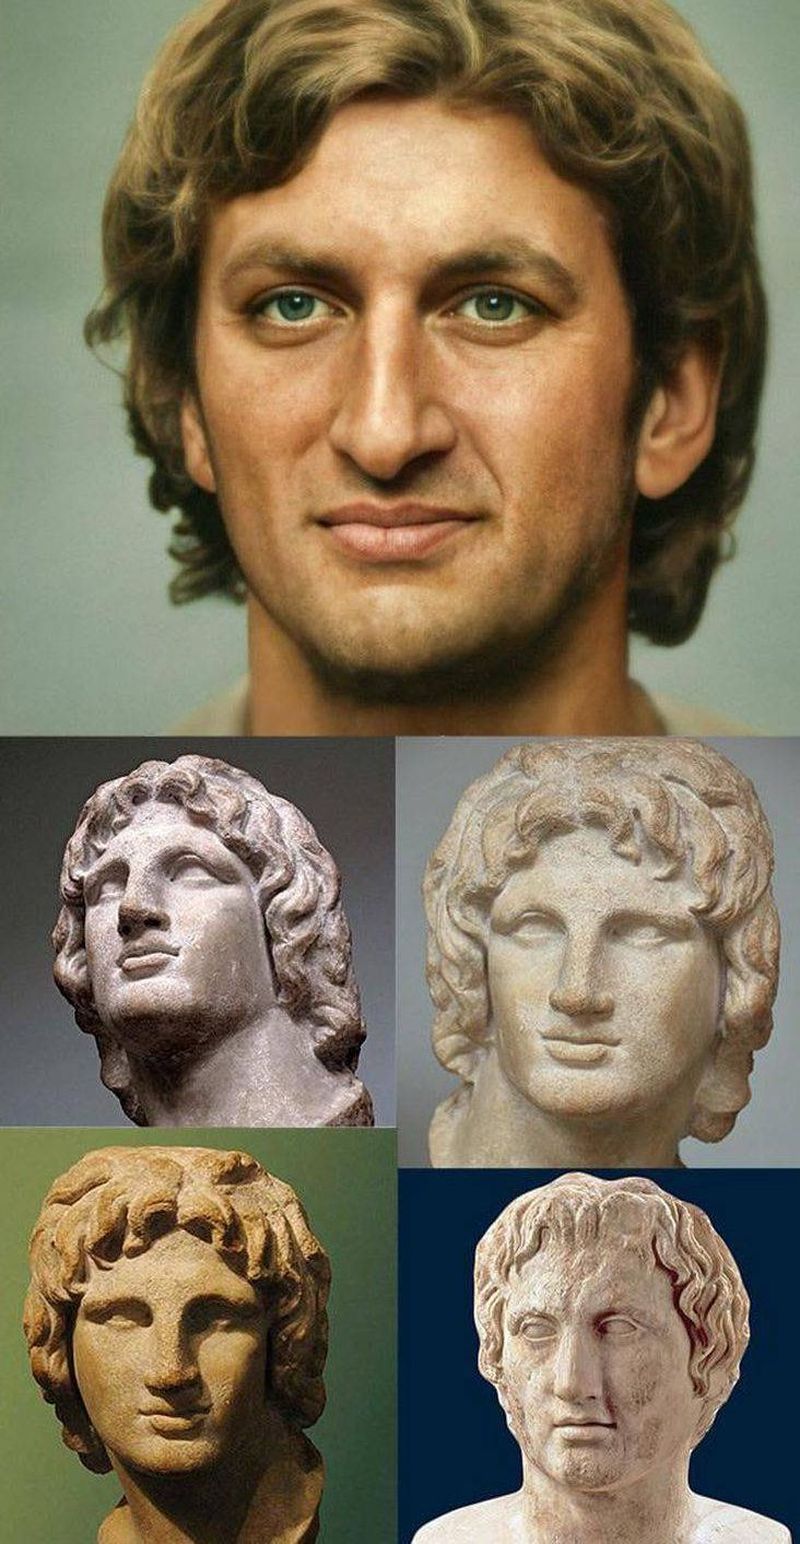 Retrato de Alejando Magno basado en sus bustos y relatos antiguos sobre él